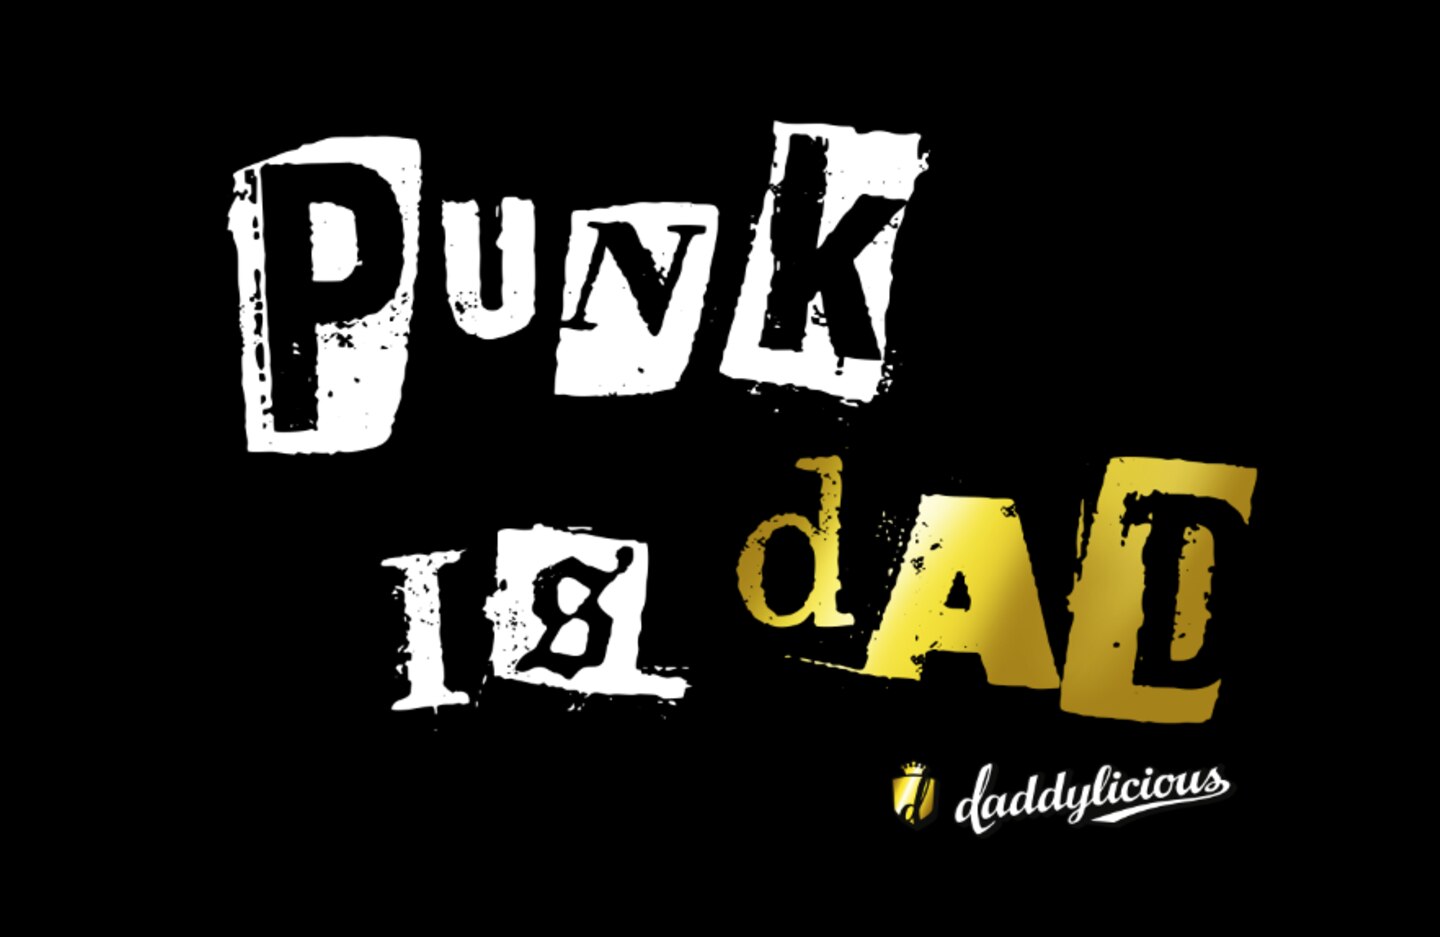 Daddylicious: Punk is Dad – Stimmt das wirklich?